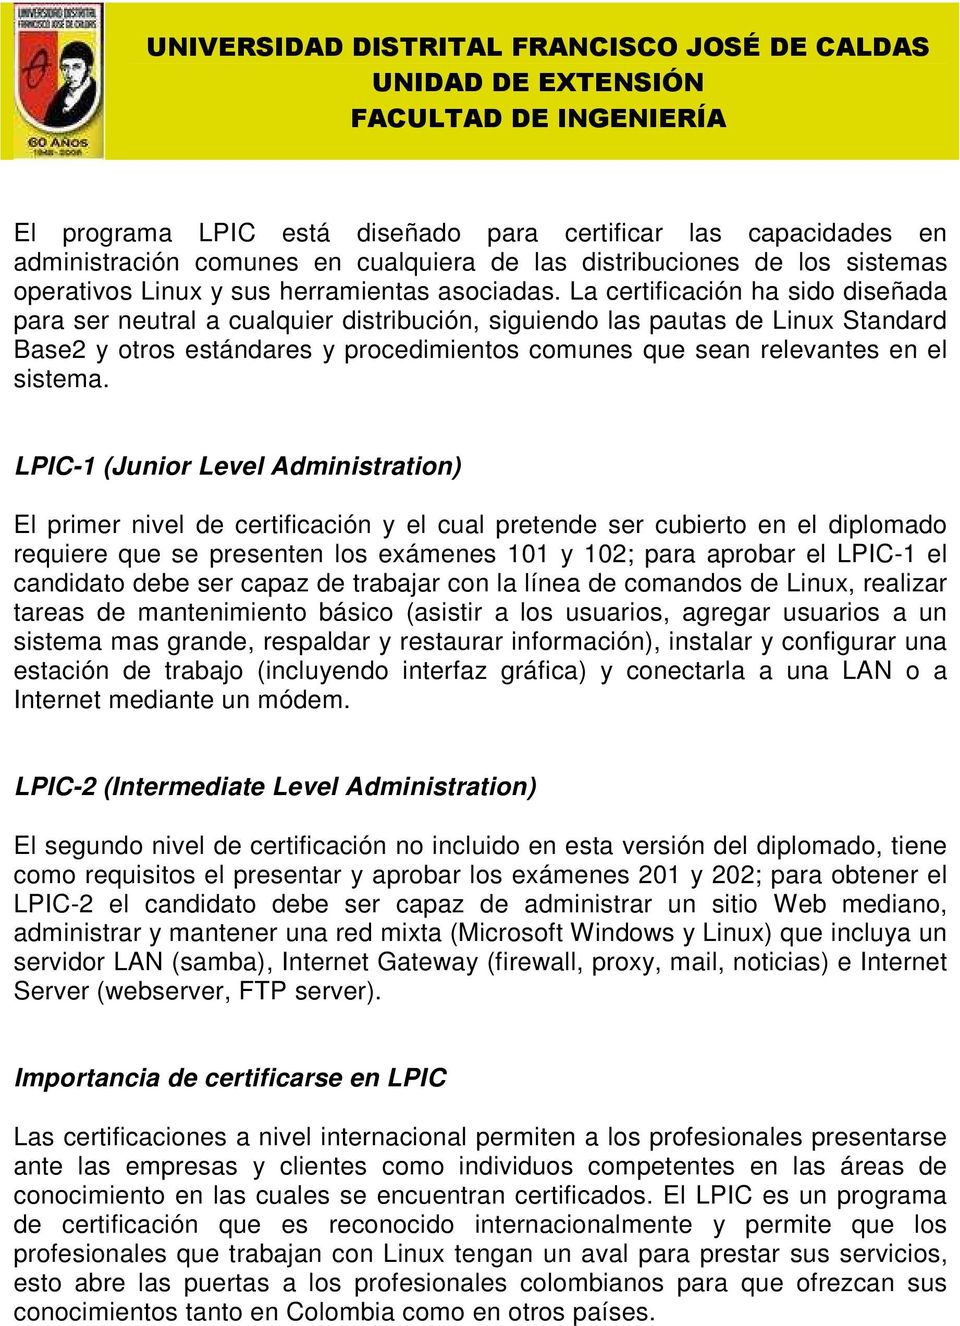 LPIC-1 (Junior Level Administration) El primer nivel de certificación y el cual pretende ser cubierto en el diplomado requiere que se presenten los exámenes 101 y 102; para aprobar el LPIC-1 el